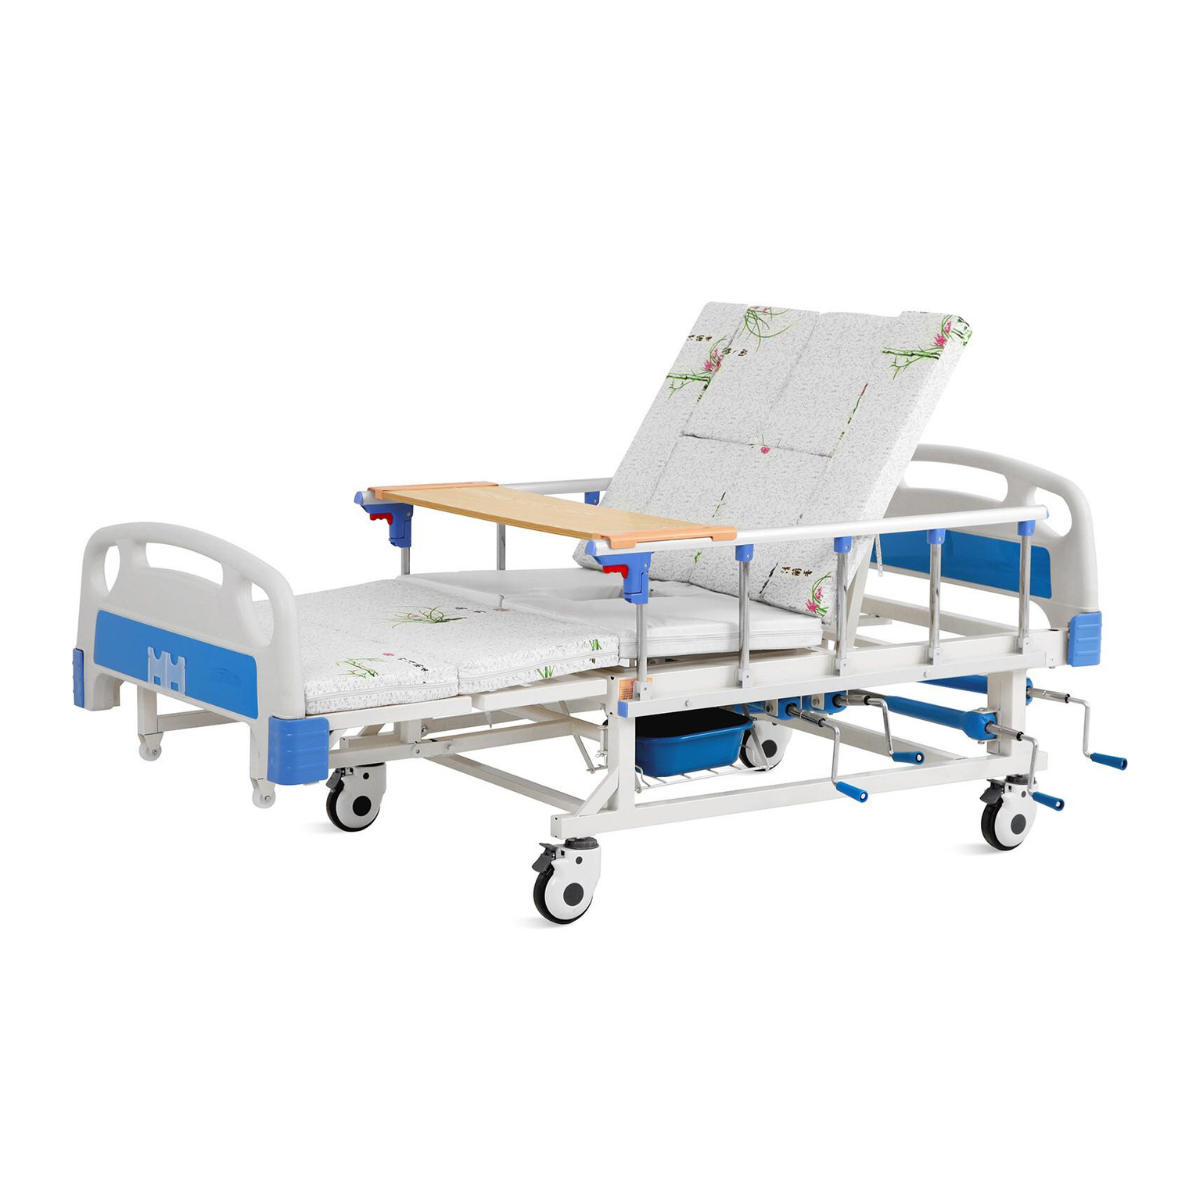 เตียงพยาบาลมือหมุน พลิกตะแคงตัวซ้าย-ขวา รุ่นซุปเปอร์ชีป Super Cheap (C-020)